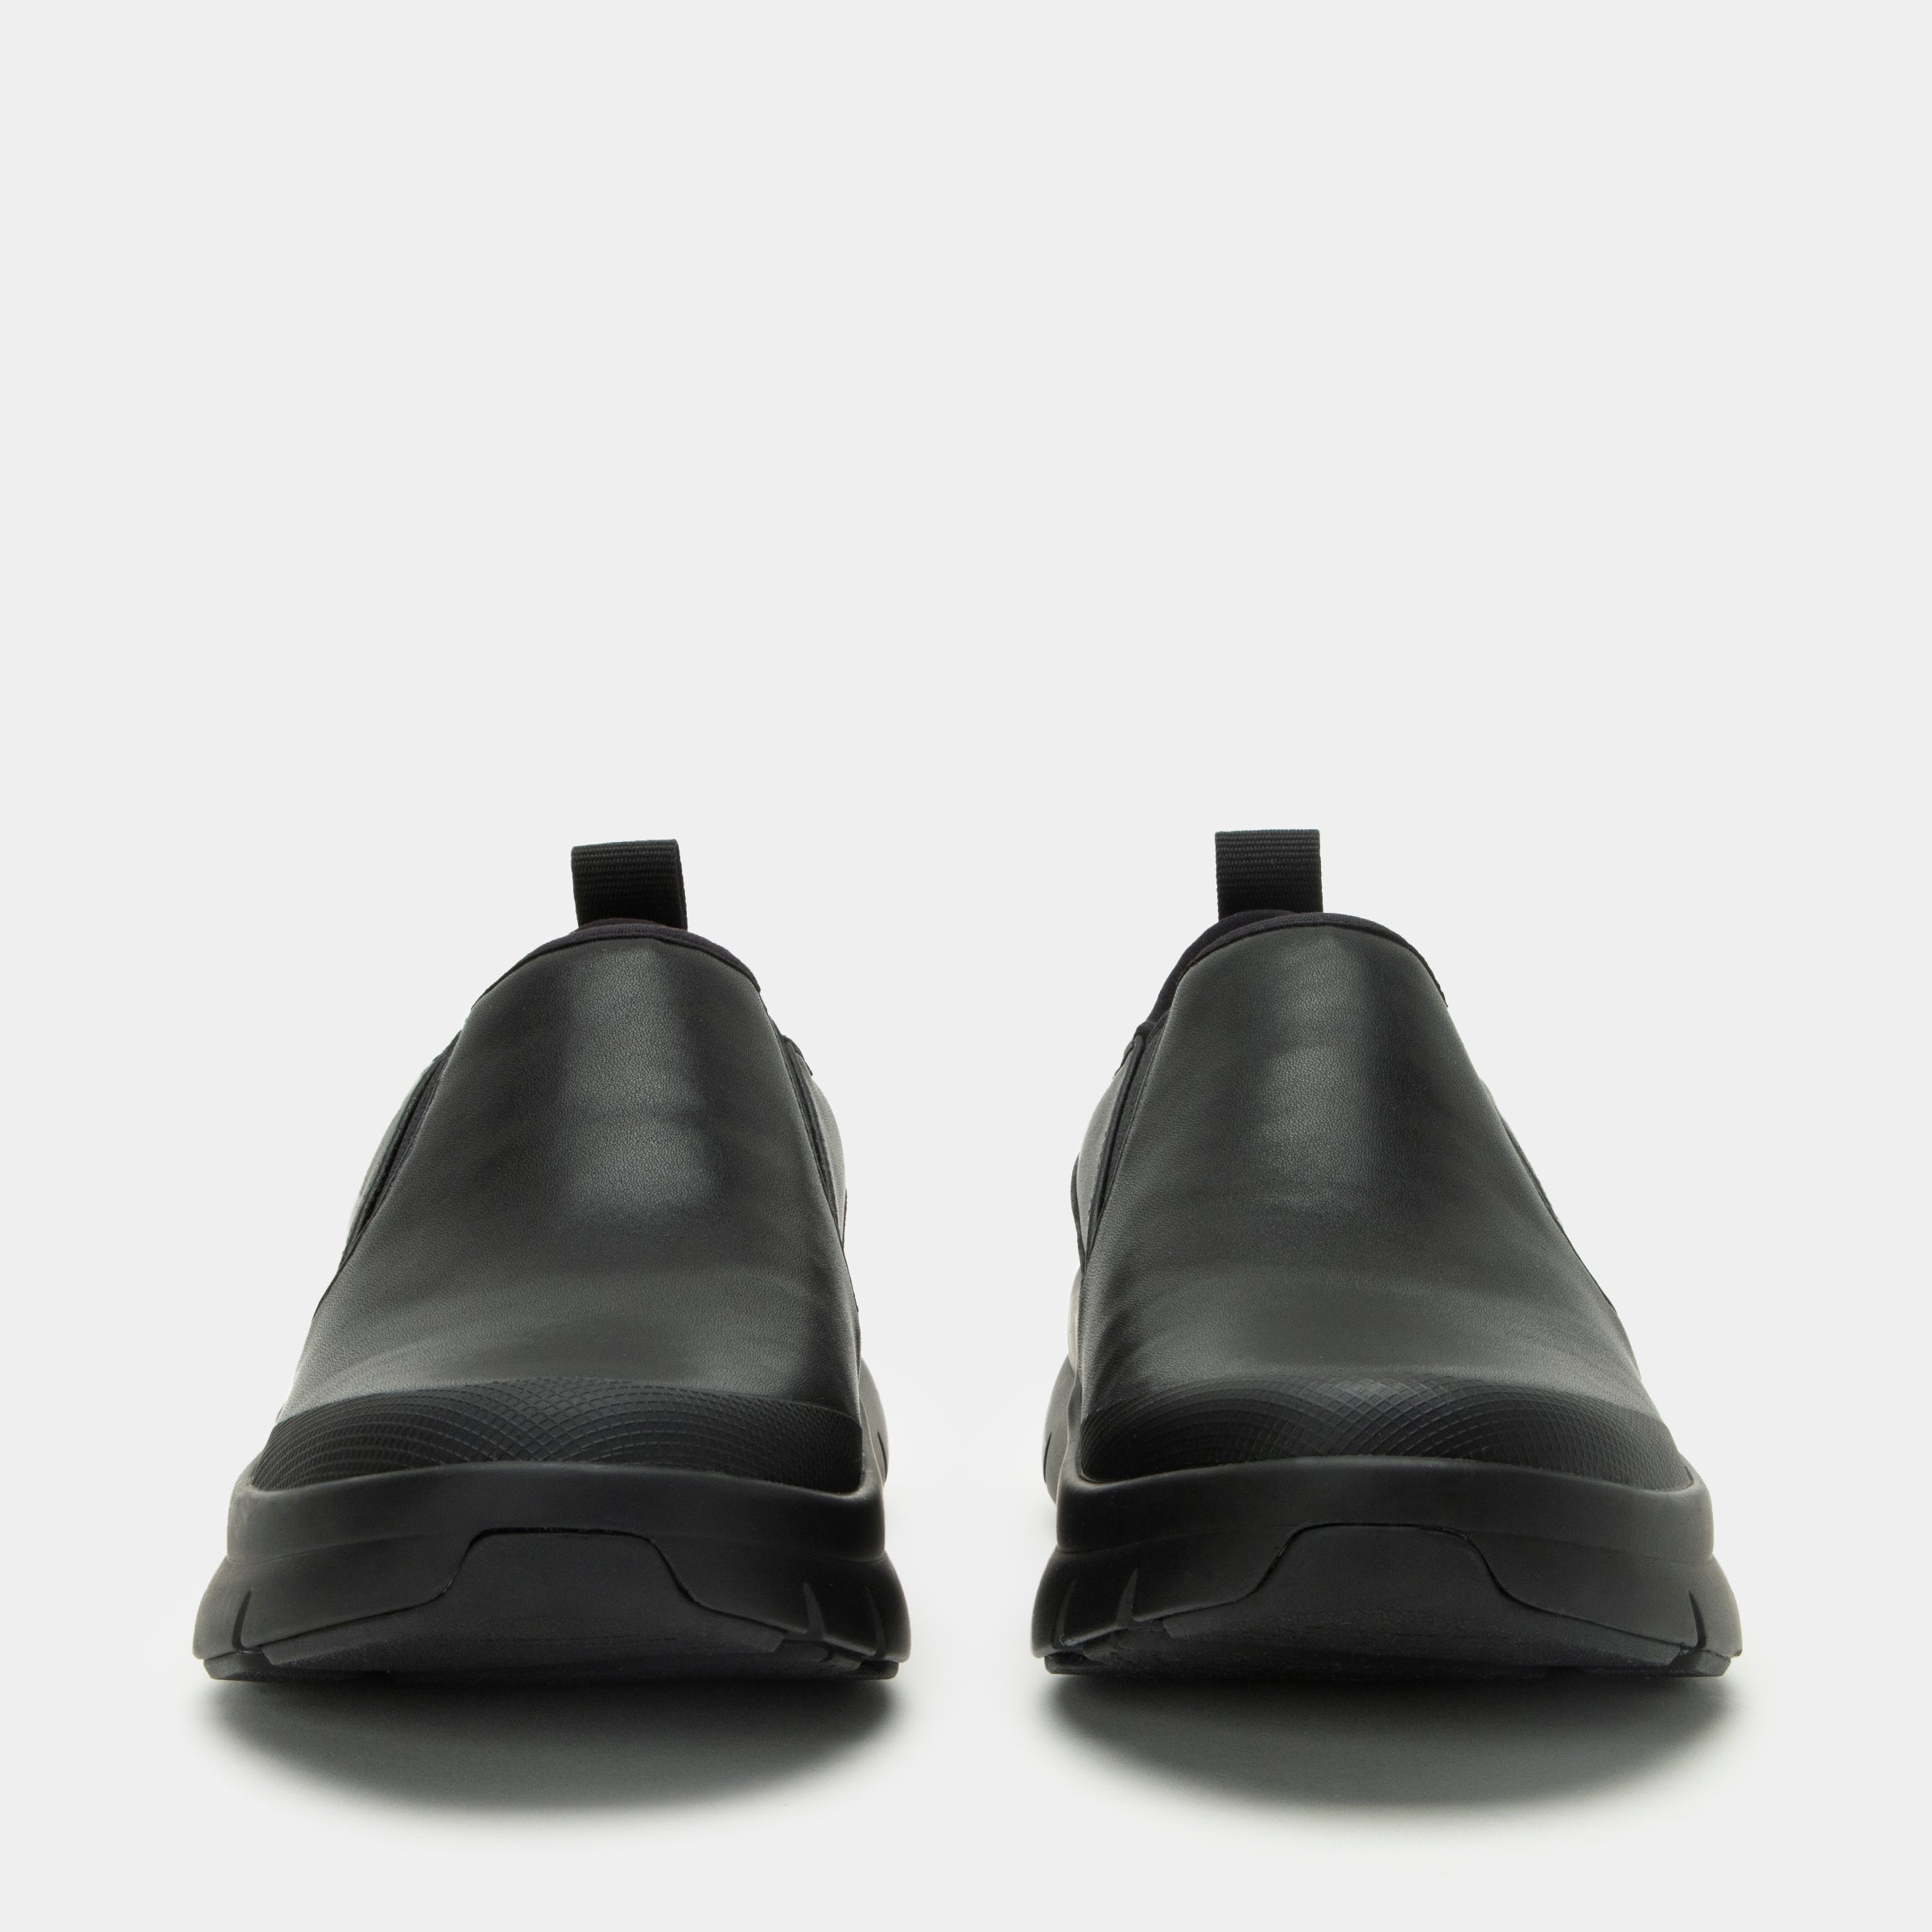 Shift Lead Black Out Shoe - Alegria Shoes